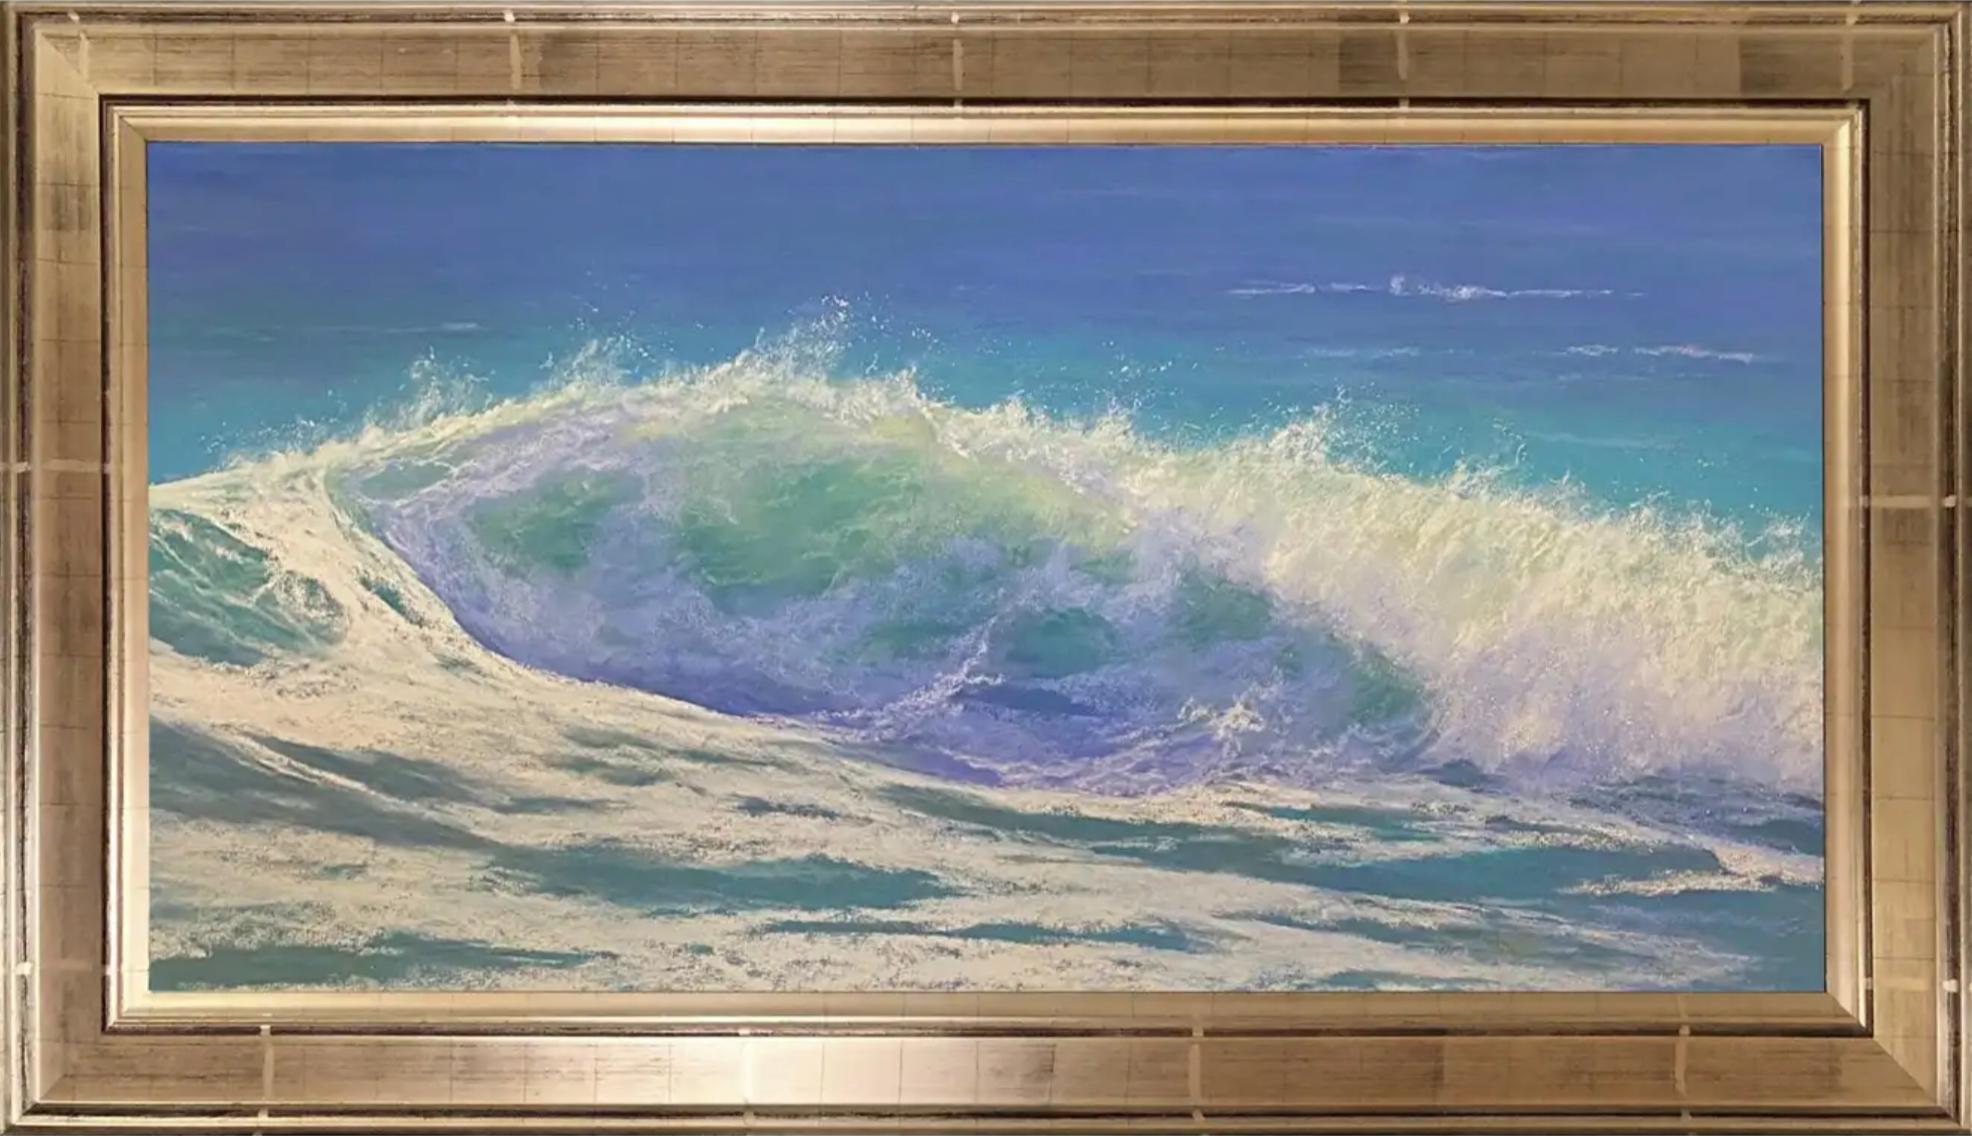 Dina Gardner Landscape Art - Warm Water, Framed Original Impressionist Seascape Pastel Painting on Paper